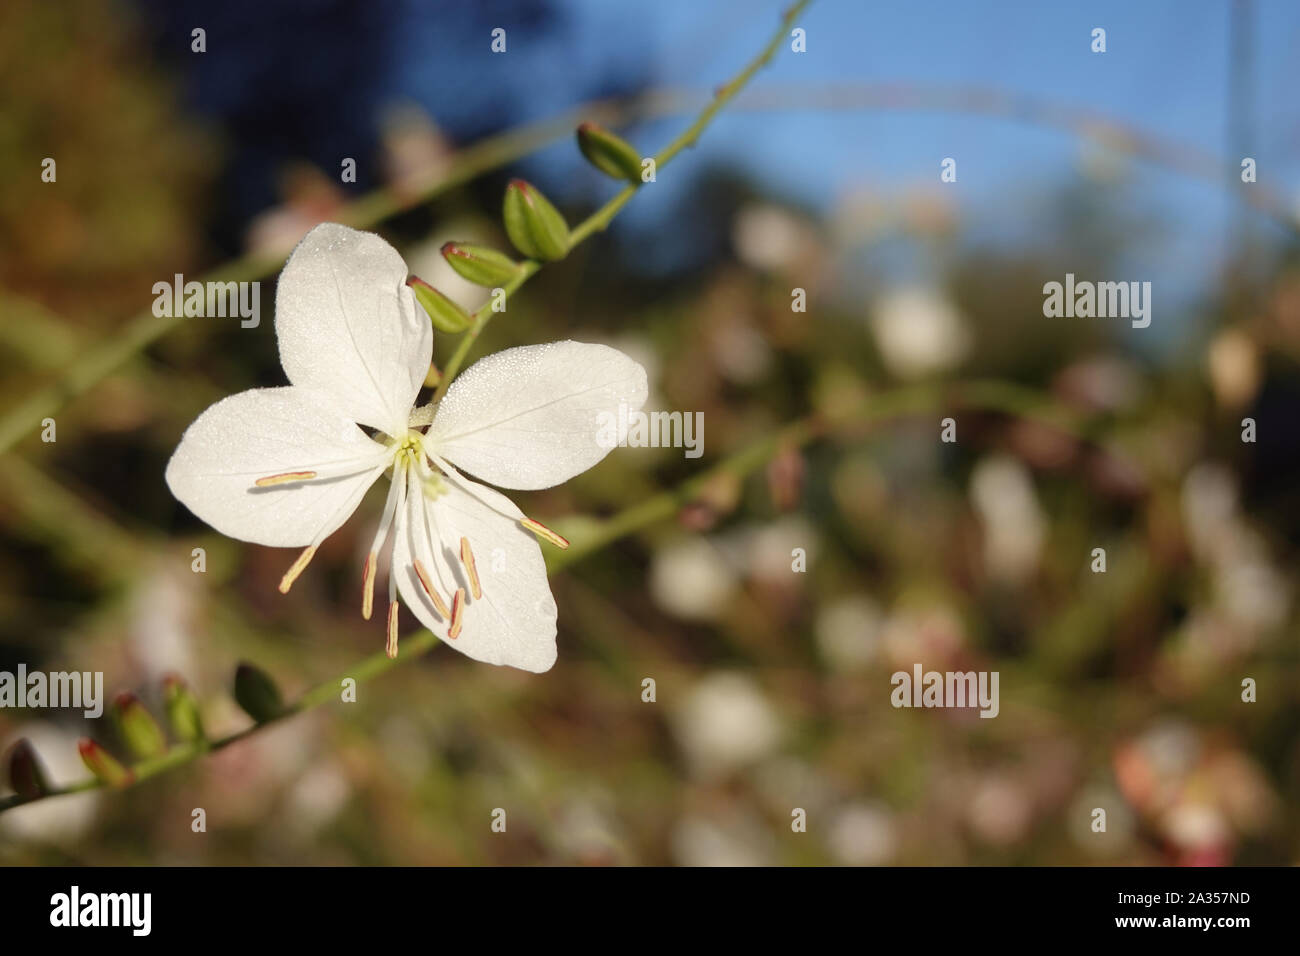 Piccolo fiore bianco del gaura lindheimeri o vorticoso farfalle al sole con la rugiada di mattina oenothera lindheimeri, Lindheimer's beeblossom close up Foto Stock